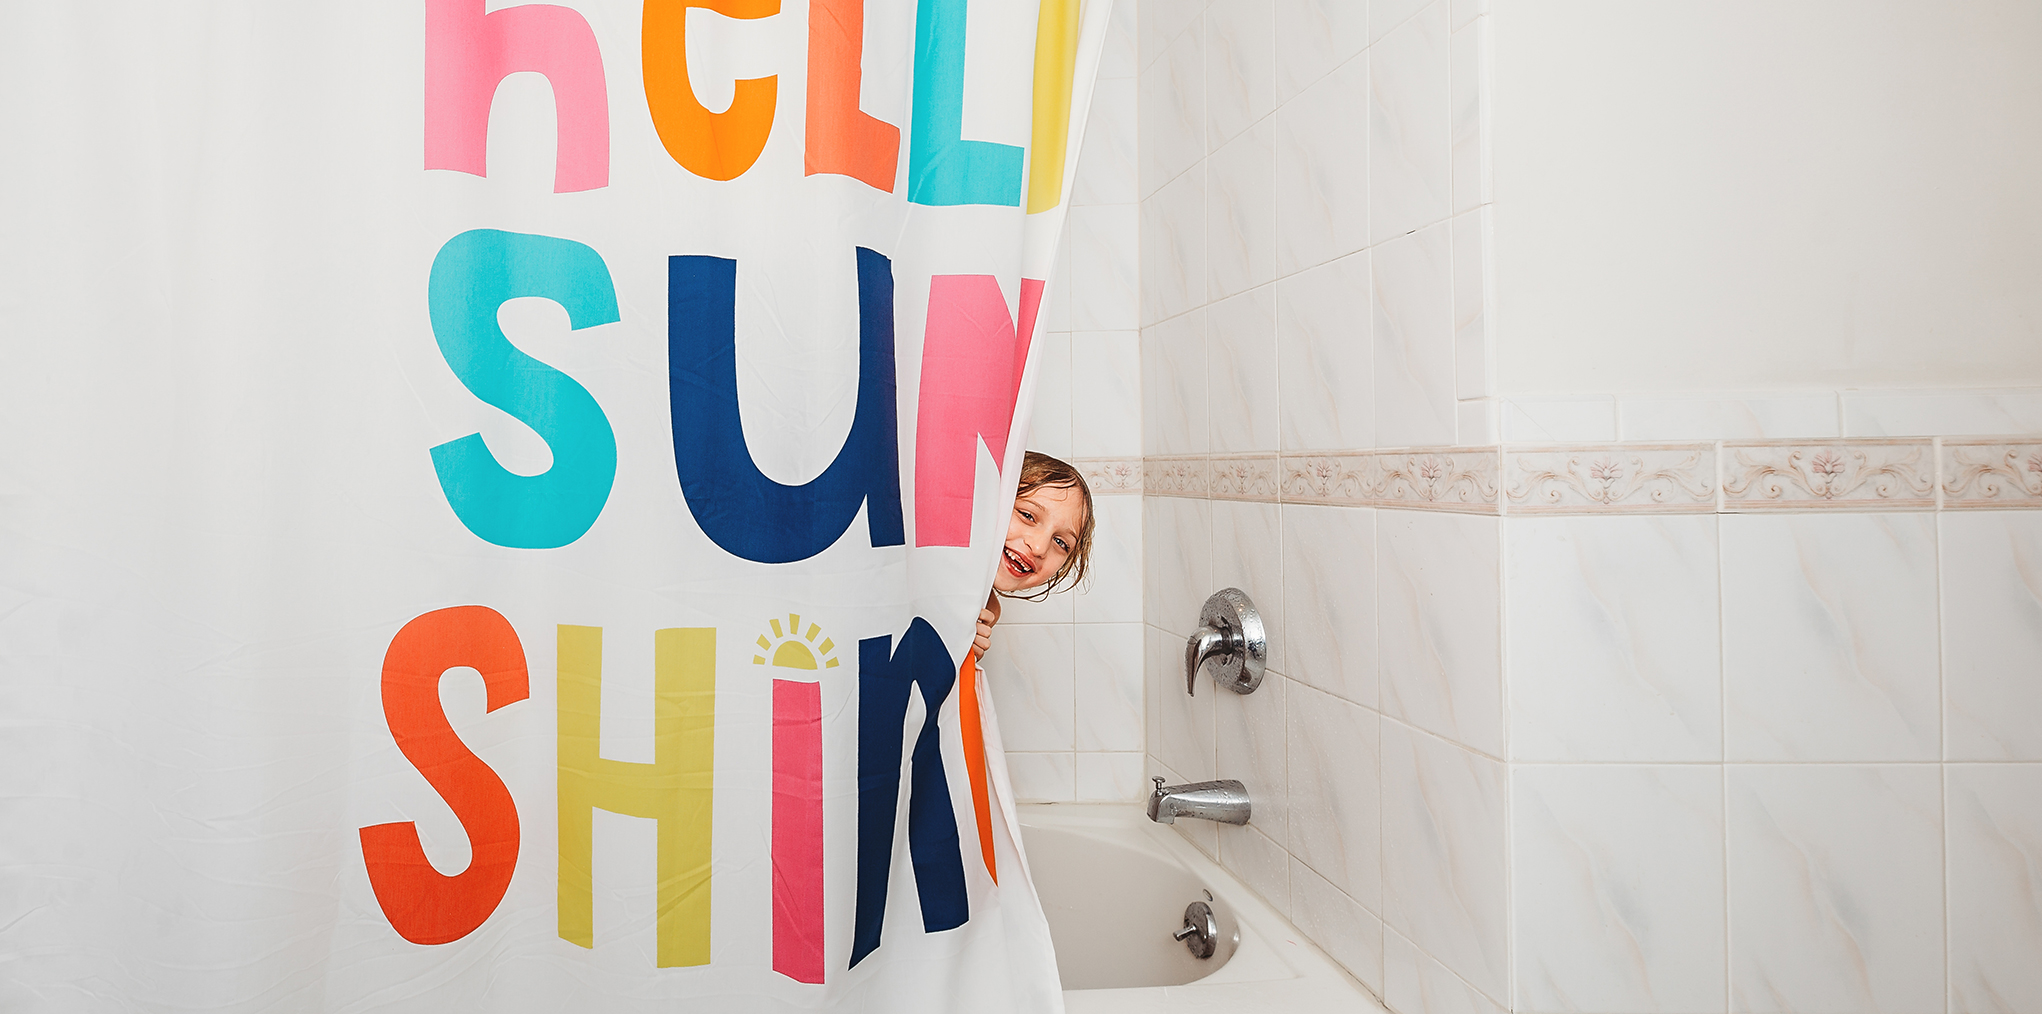 Bathroom decor ideas for creative kids